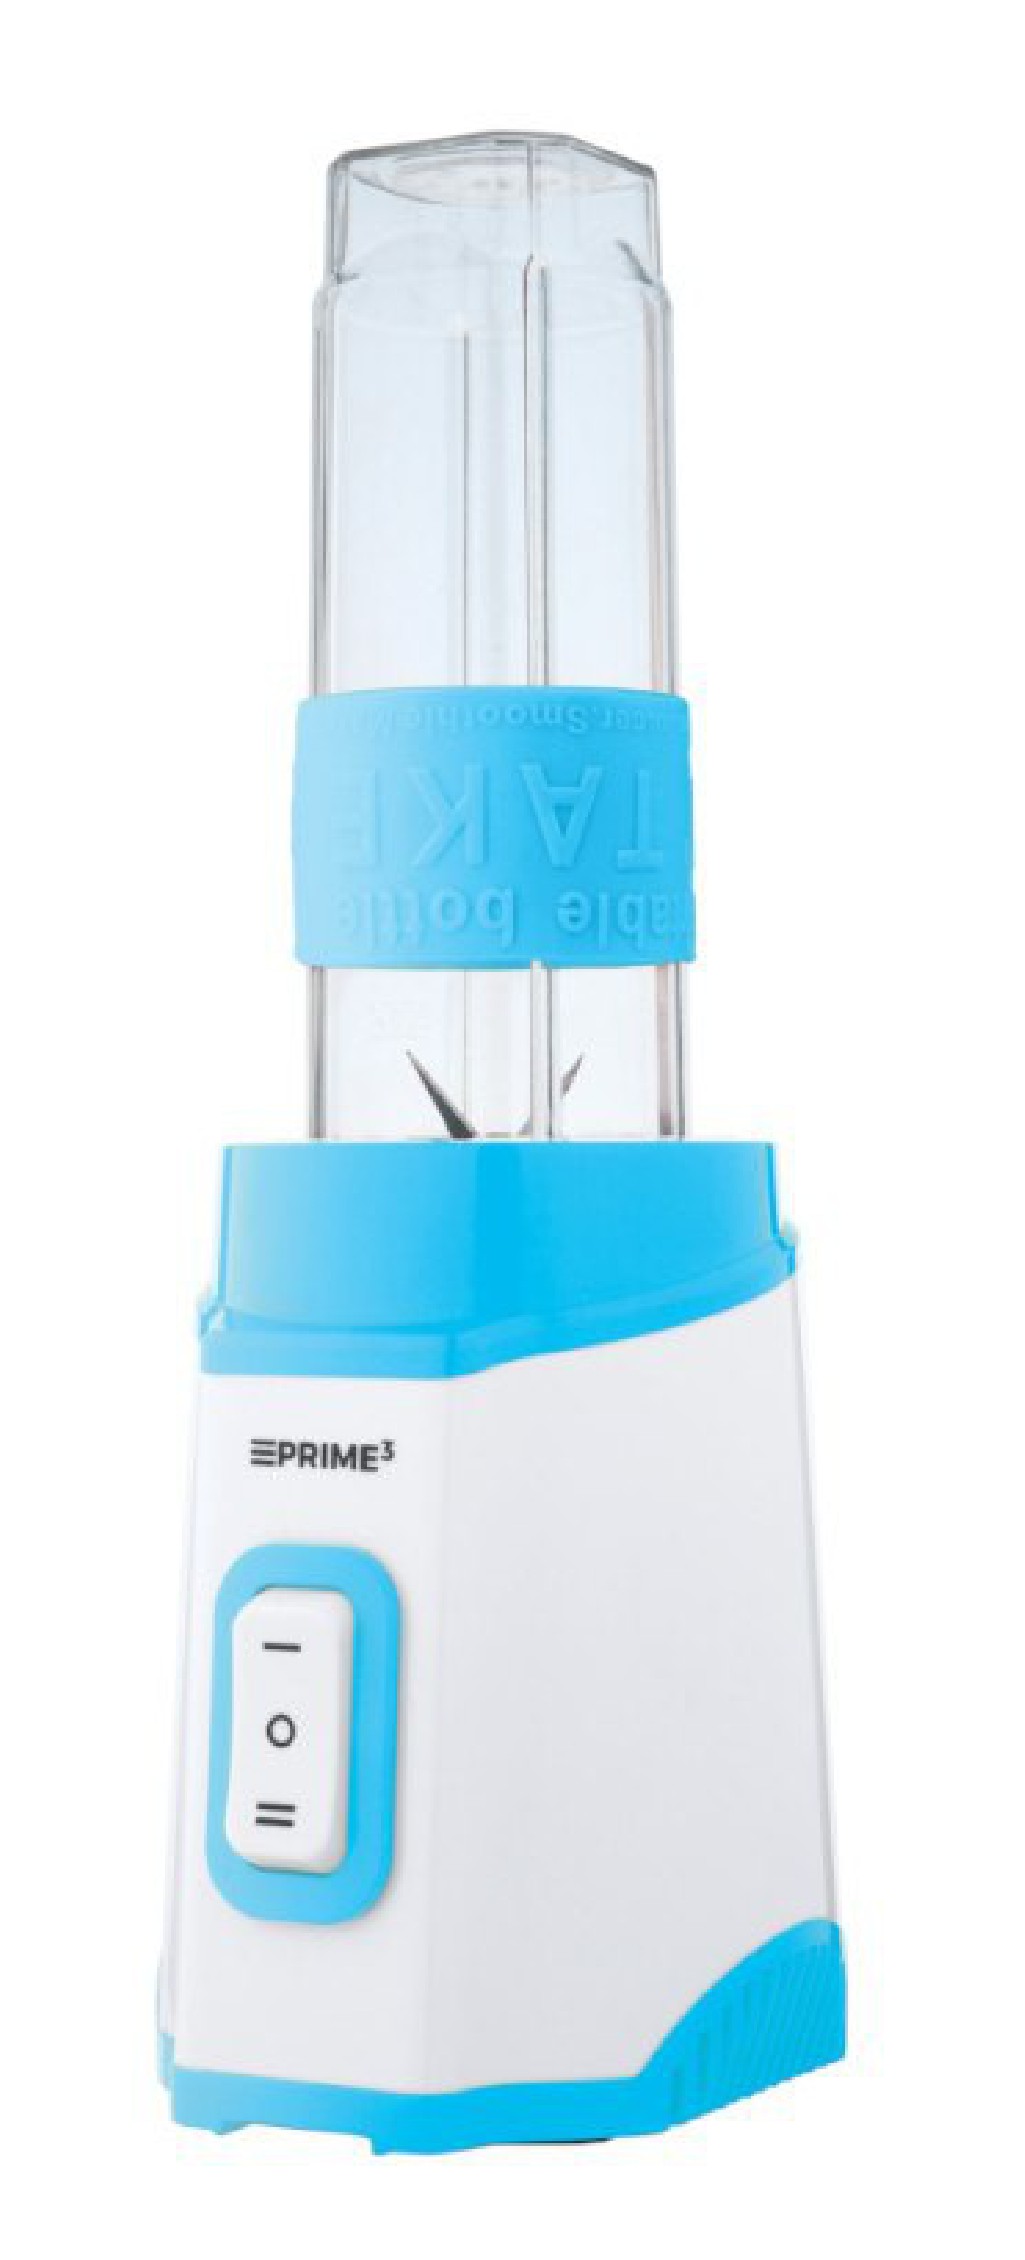 Blender smoothie Prime3 SSM41BL